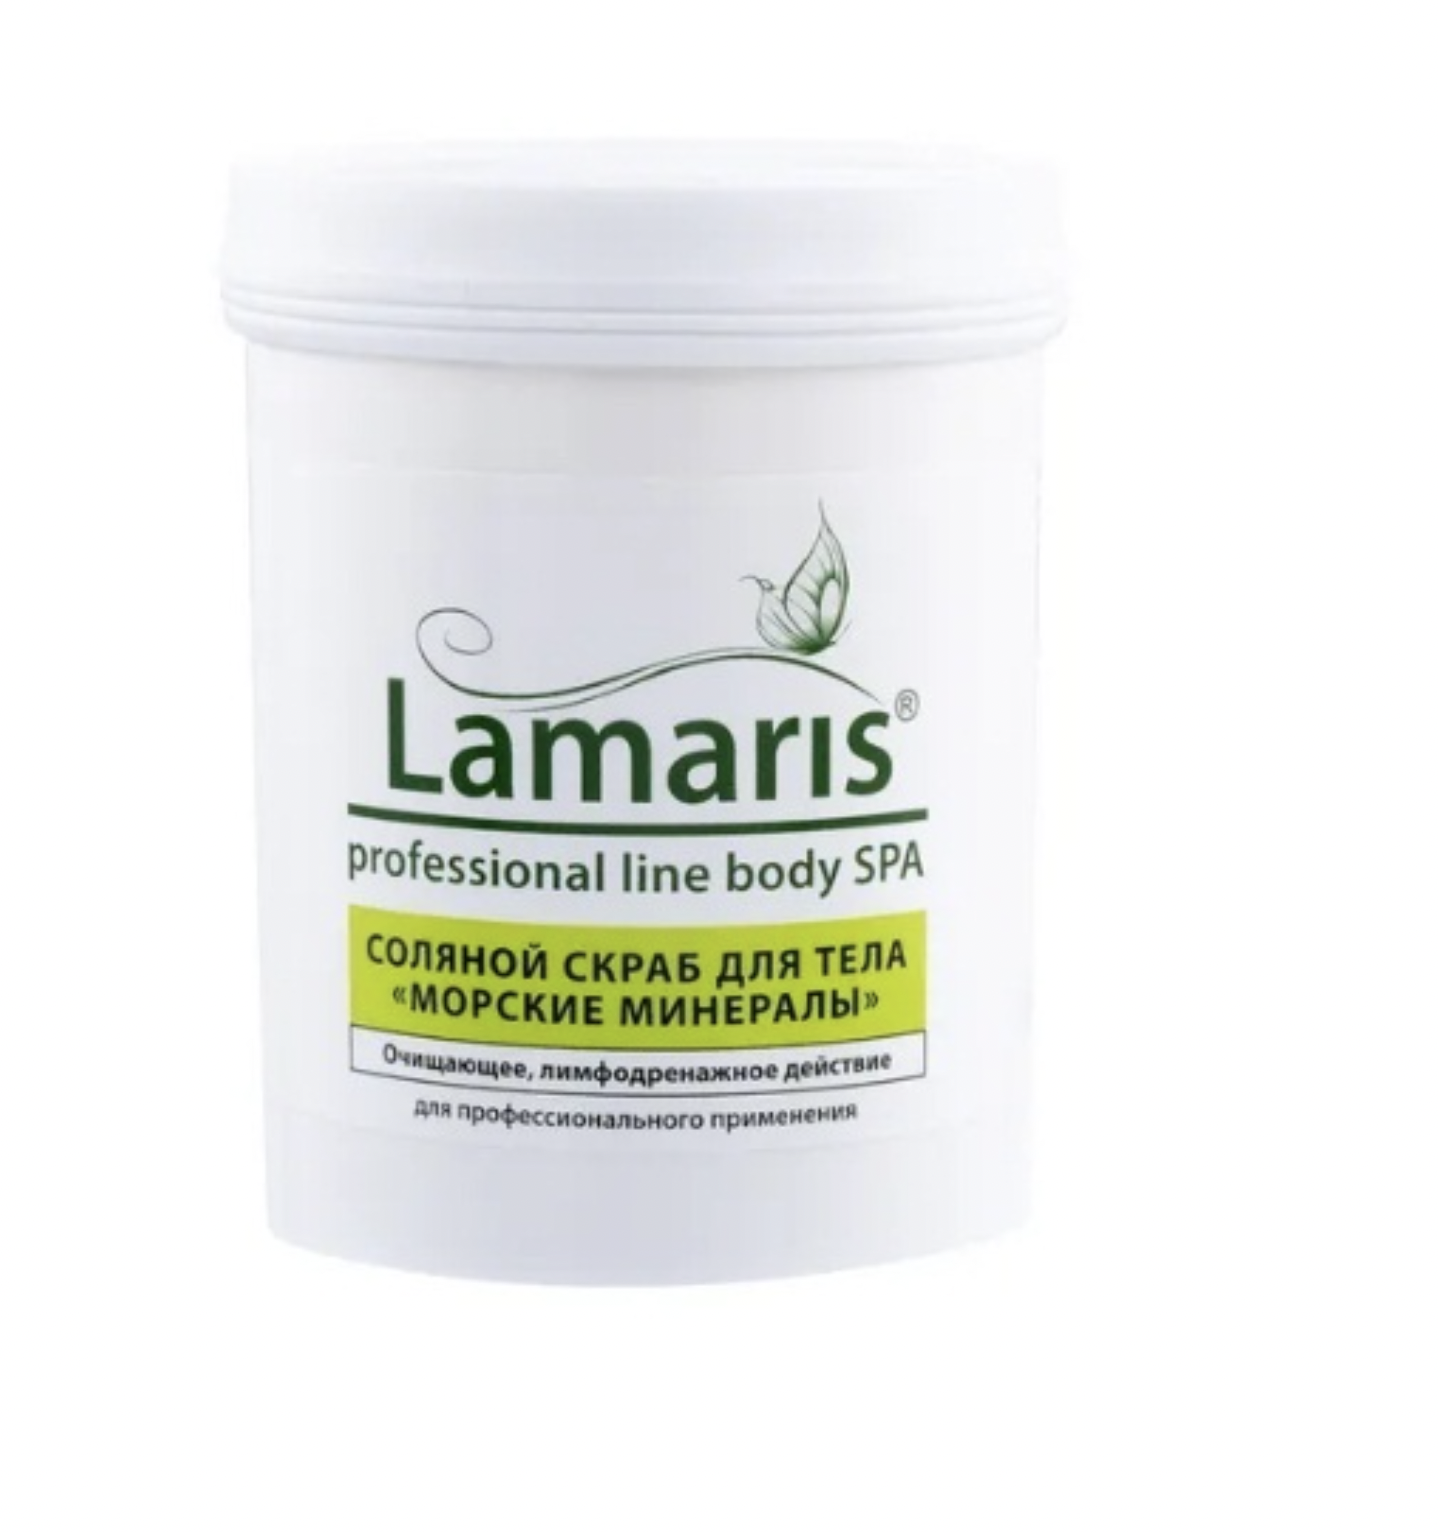 Скраб Lamaris натуральный антицеллюлитный соляной для тела с морскими минералами 620 г greenideal скраб для тела кокосовый натуральный 300